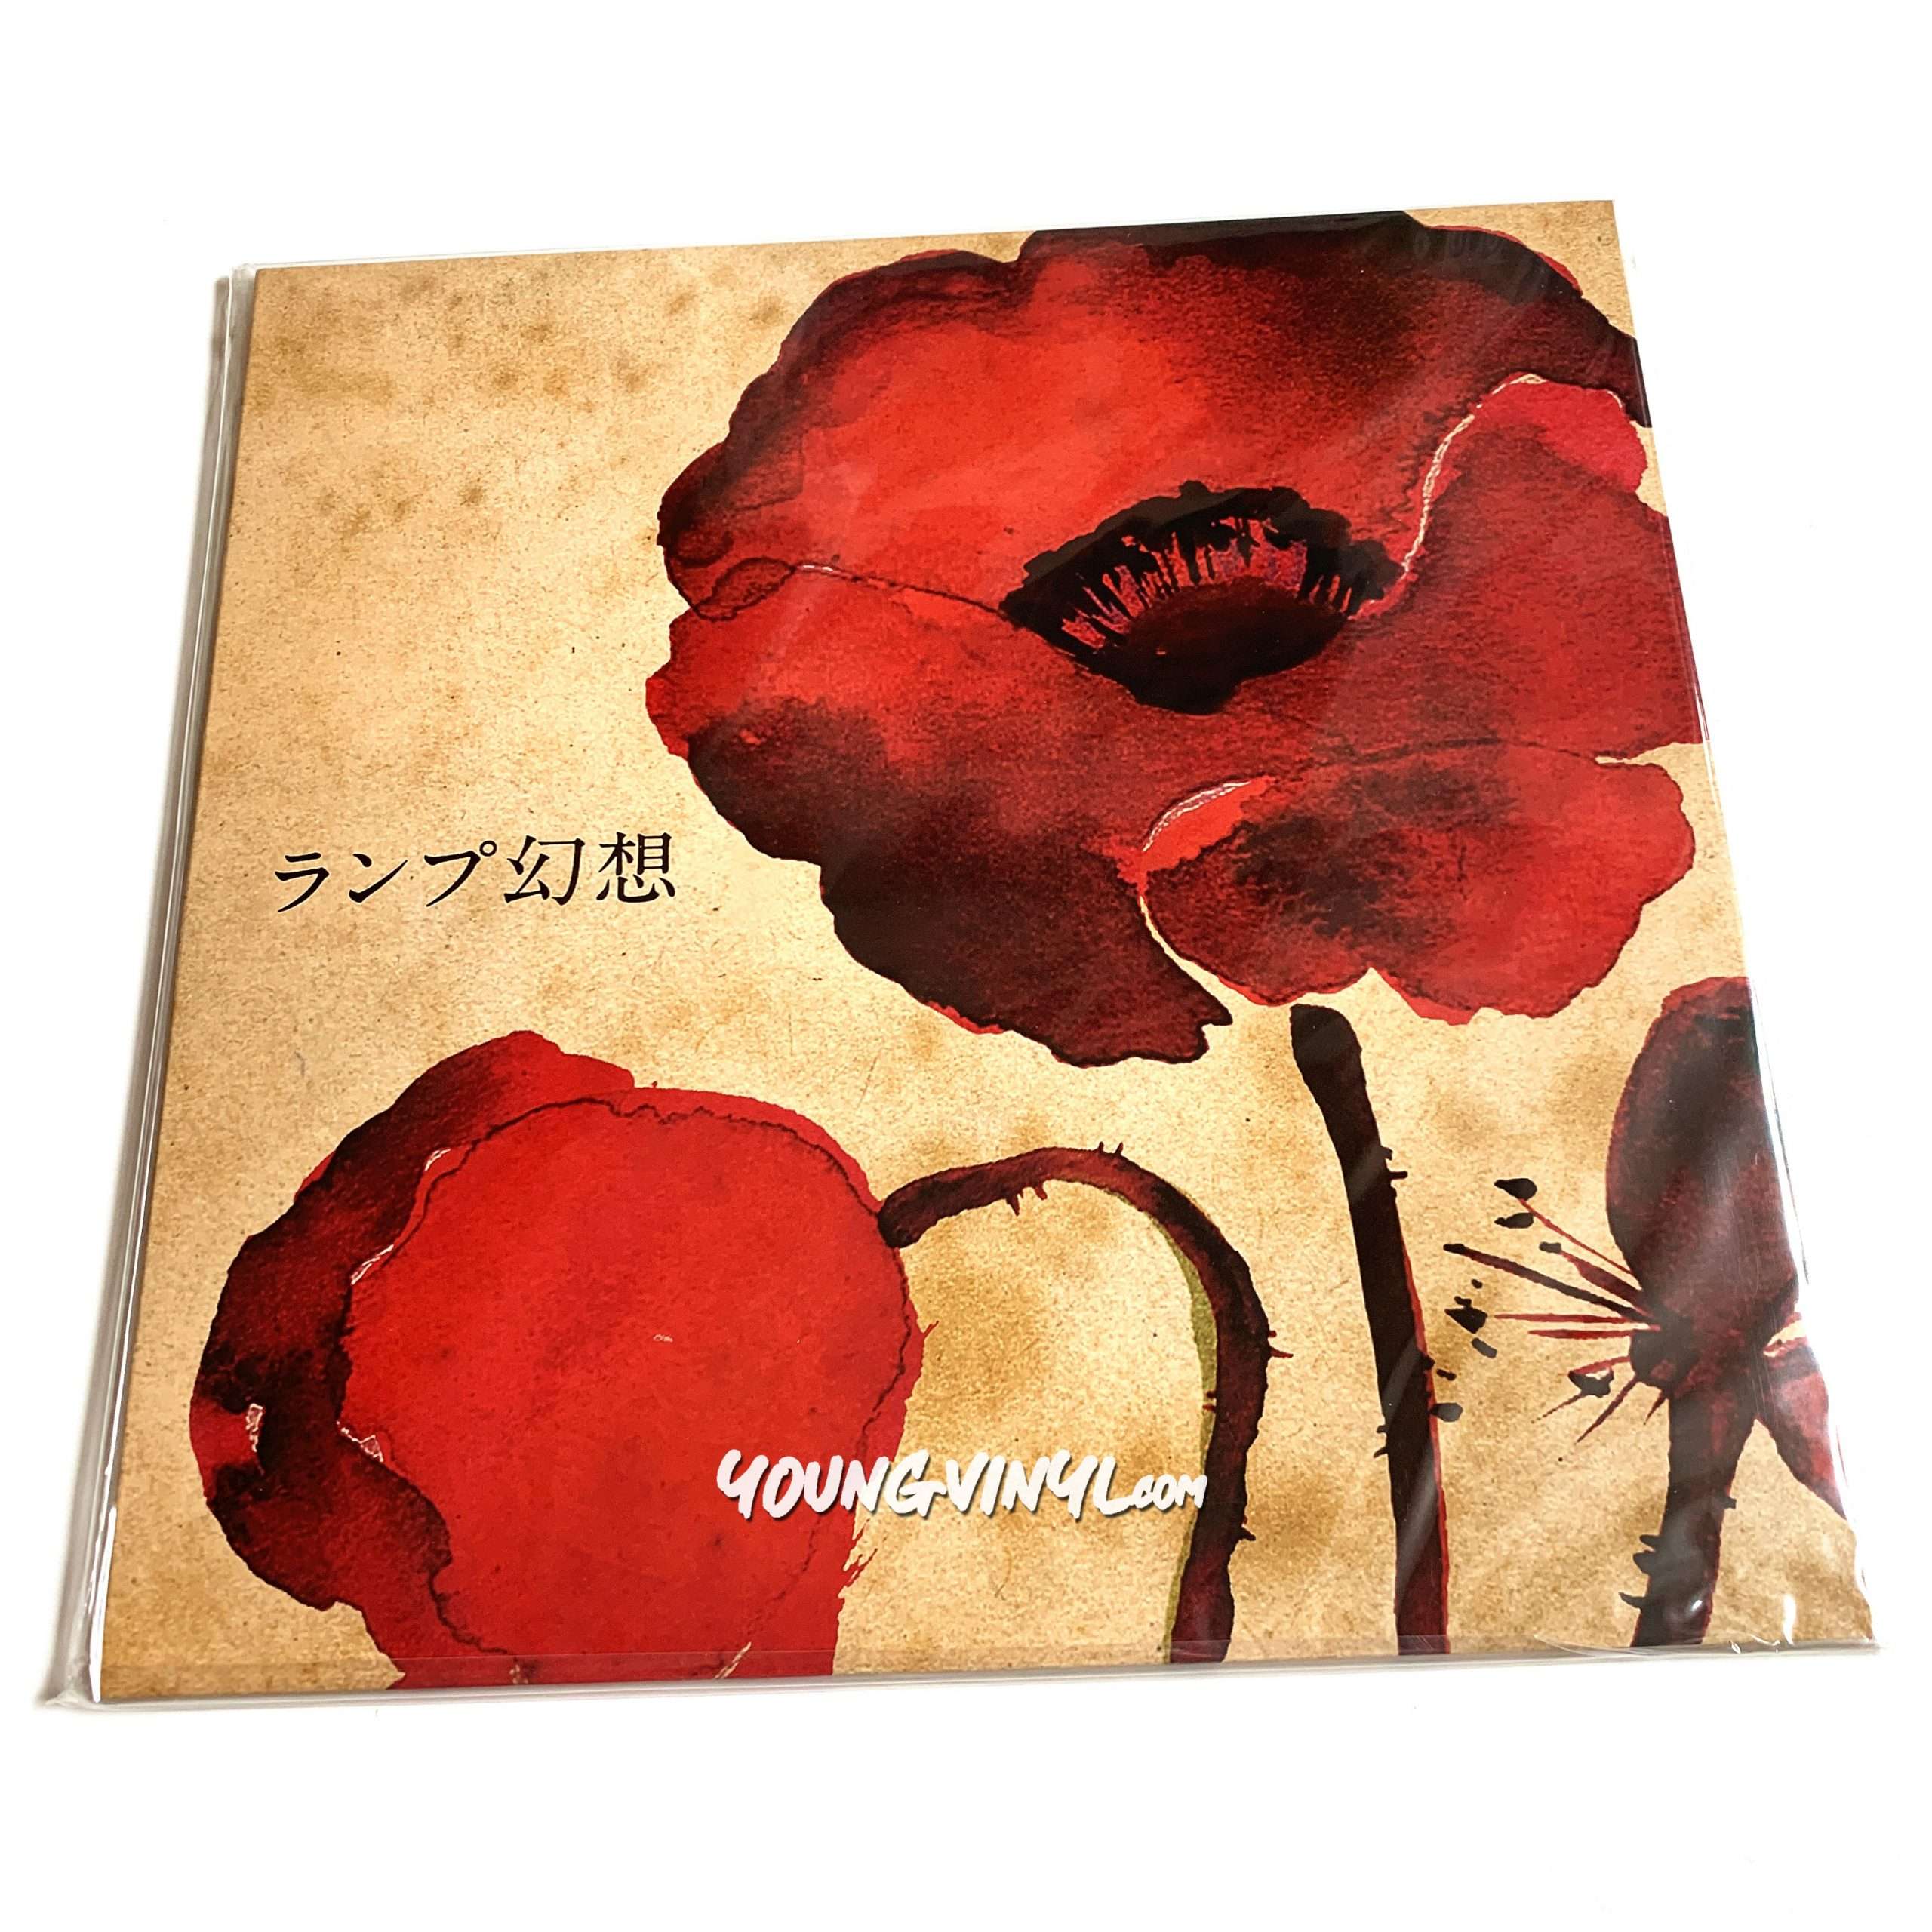 Lamp 東京ユウトピア通信 LP レコード アナログ - 邦楽